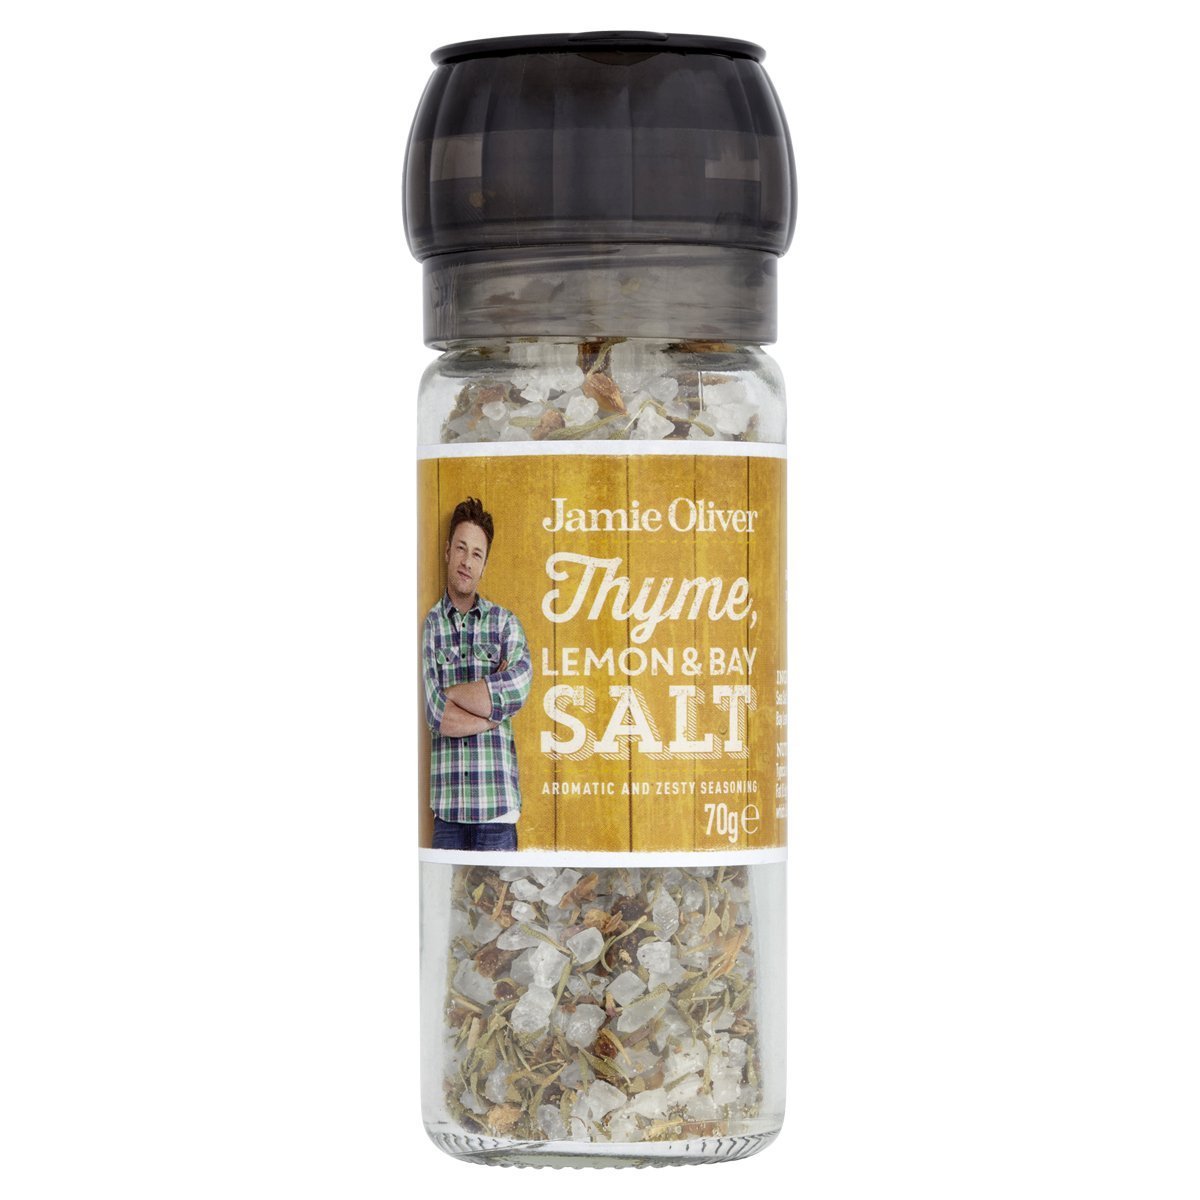 意大利Jamie Oliver百里香檸檬月桂鹽(Thyme, Lemon & Bay Salt)70克*